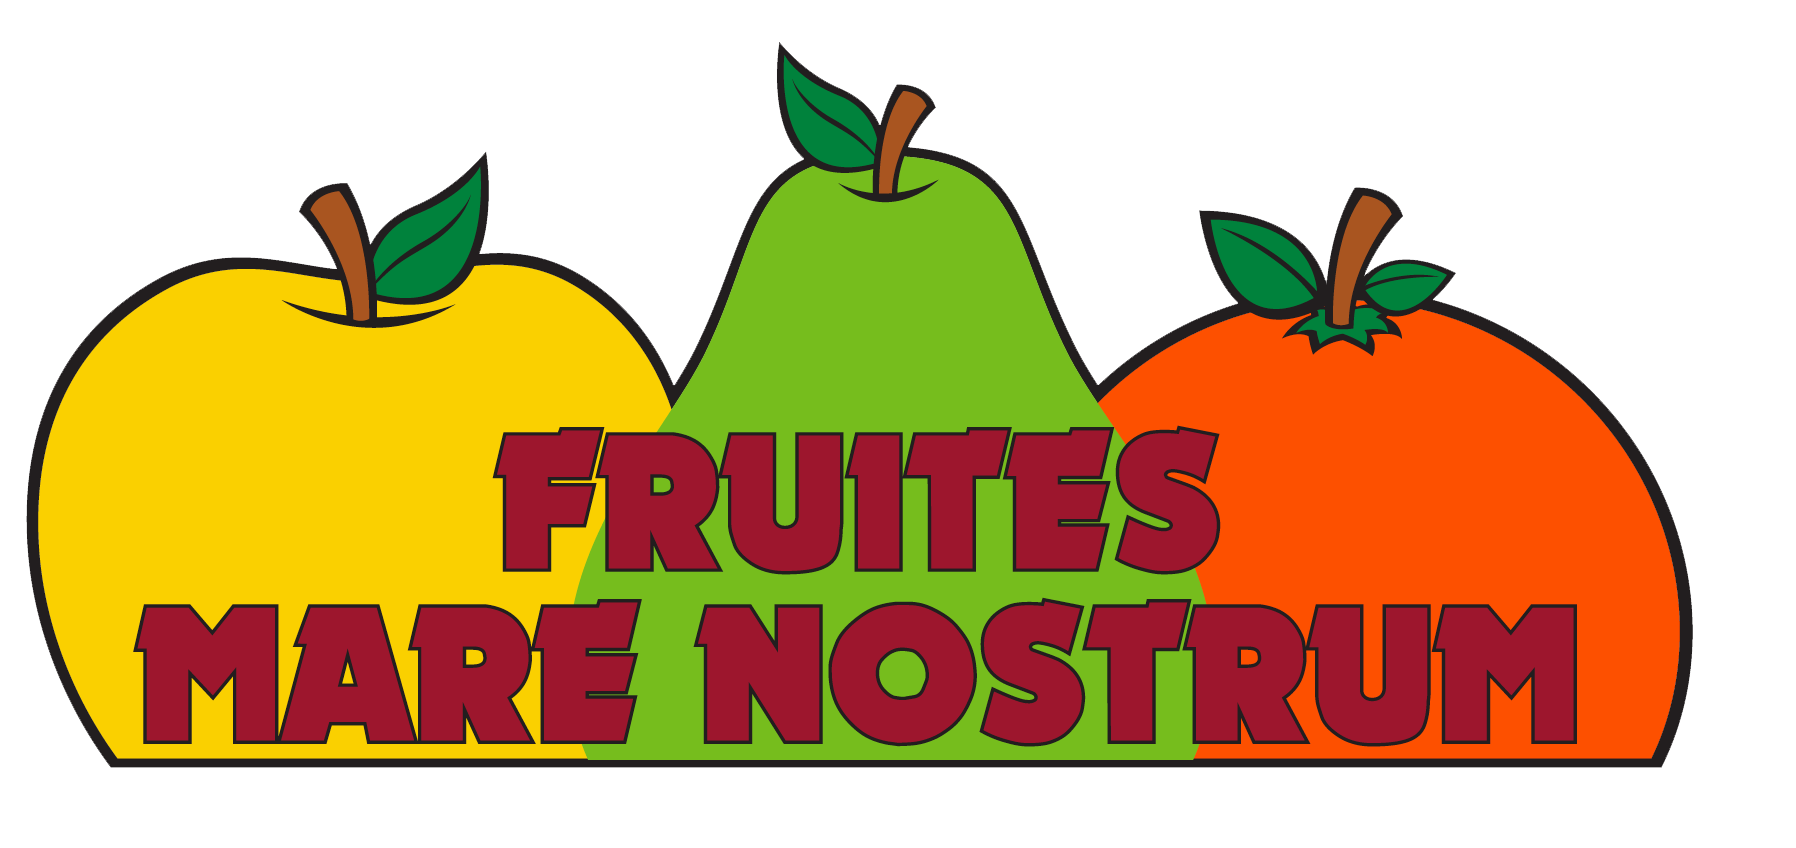 Fruites Mare Nostrum